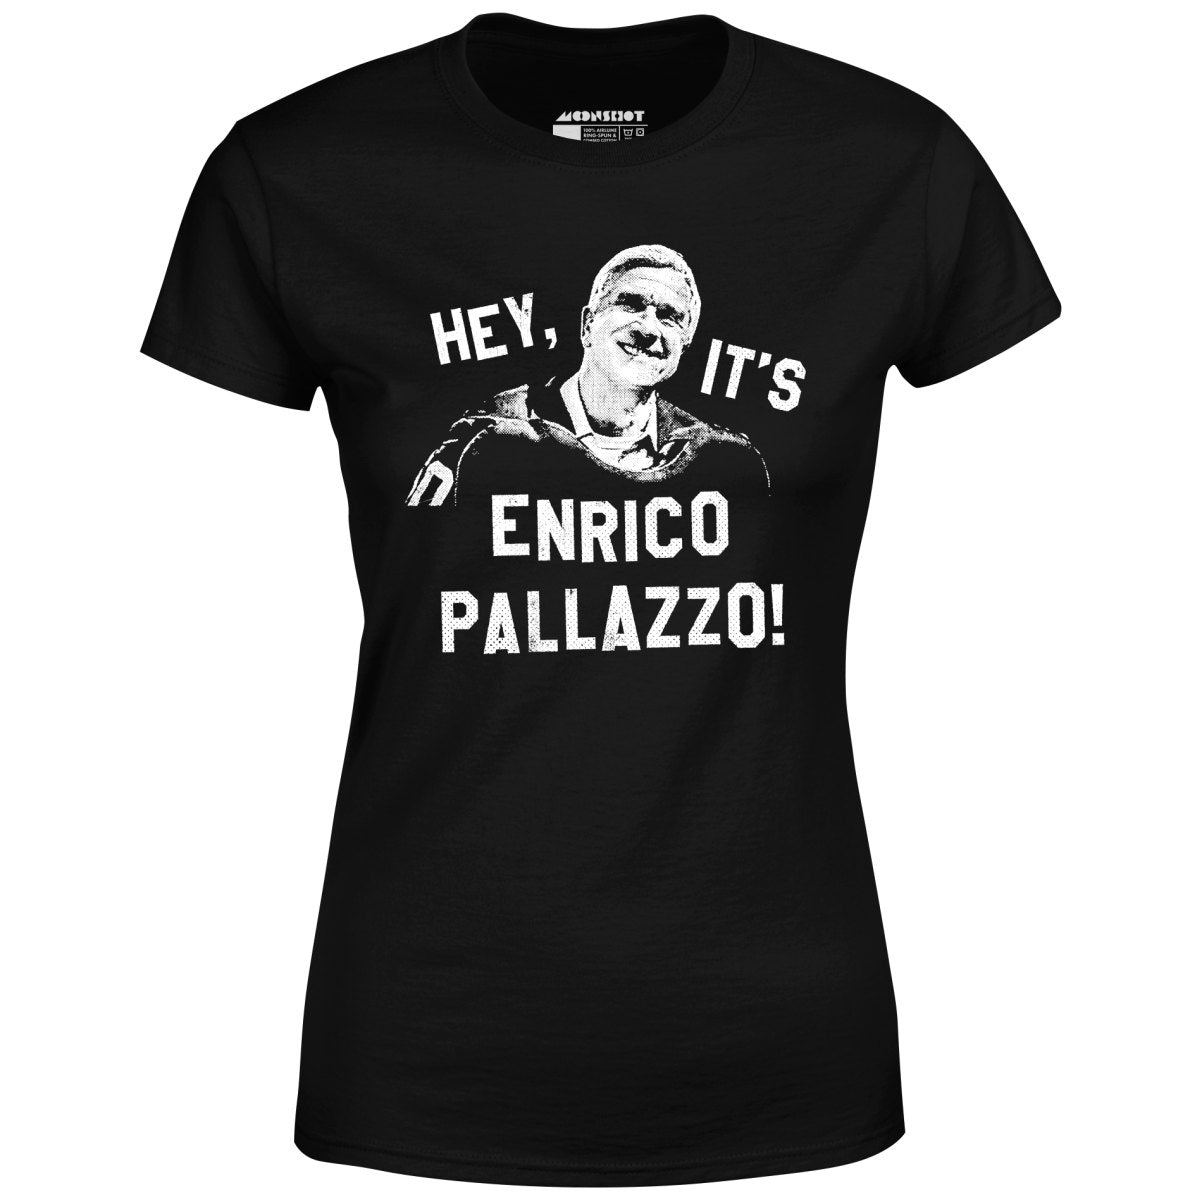 Hey, It's Enrico Pallazzo! - Women's T-Shirt